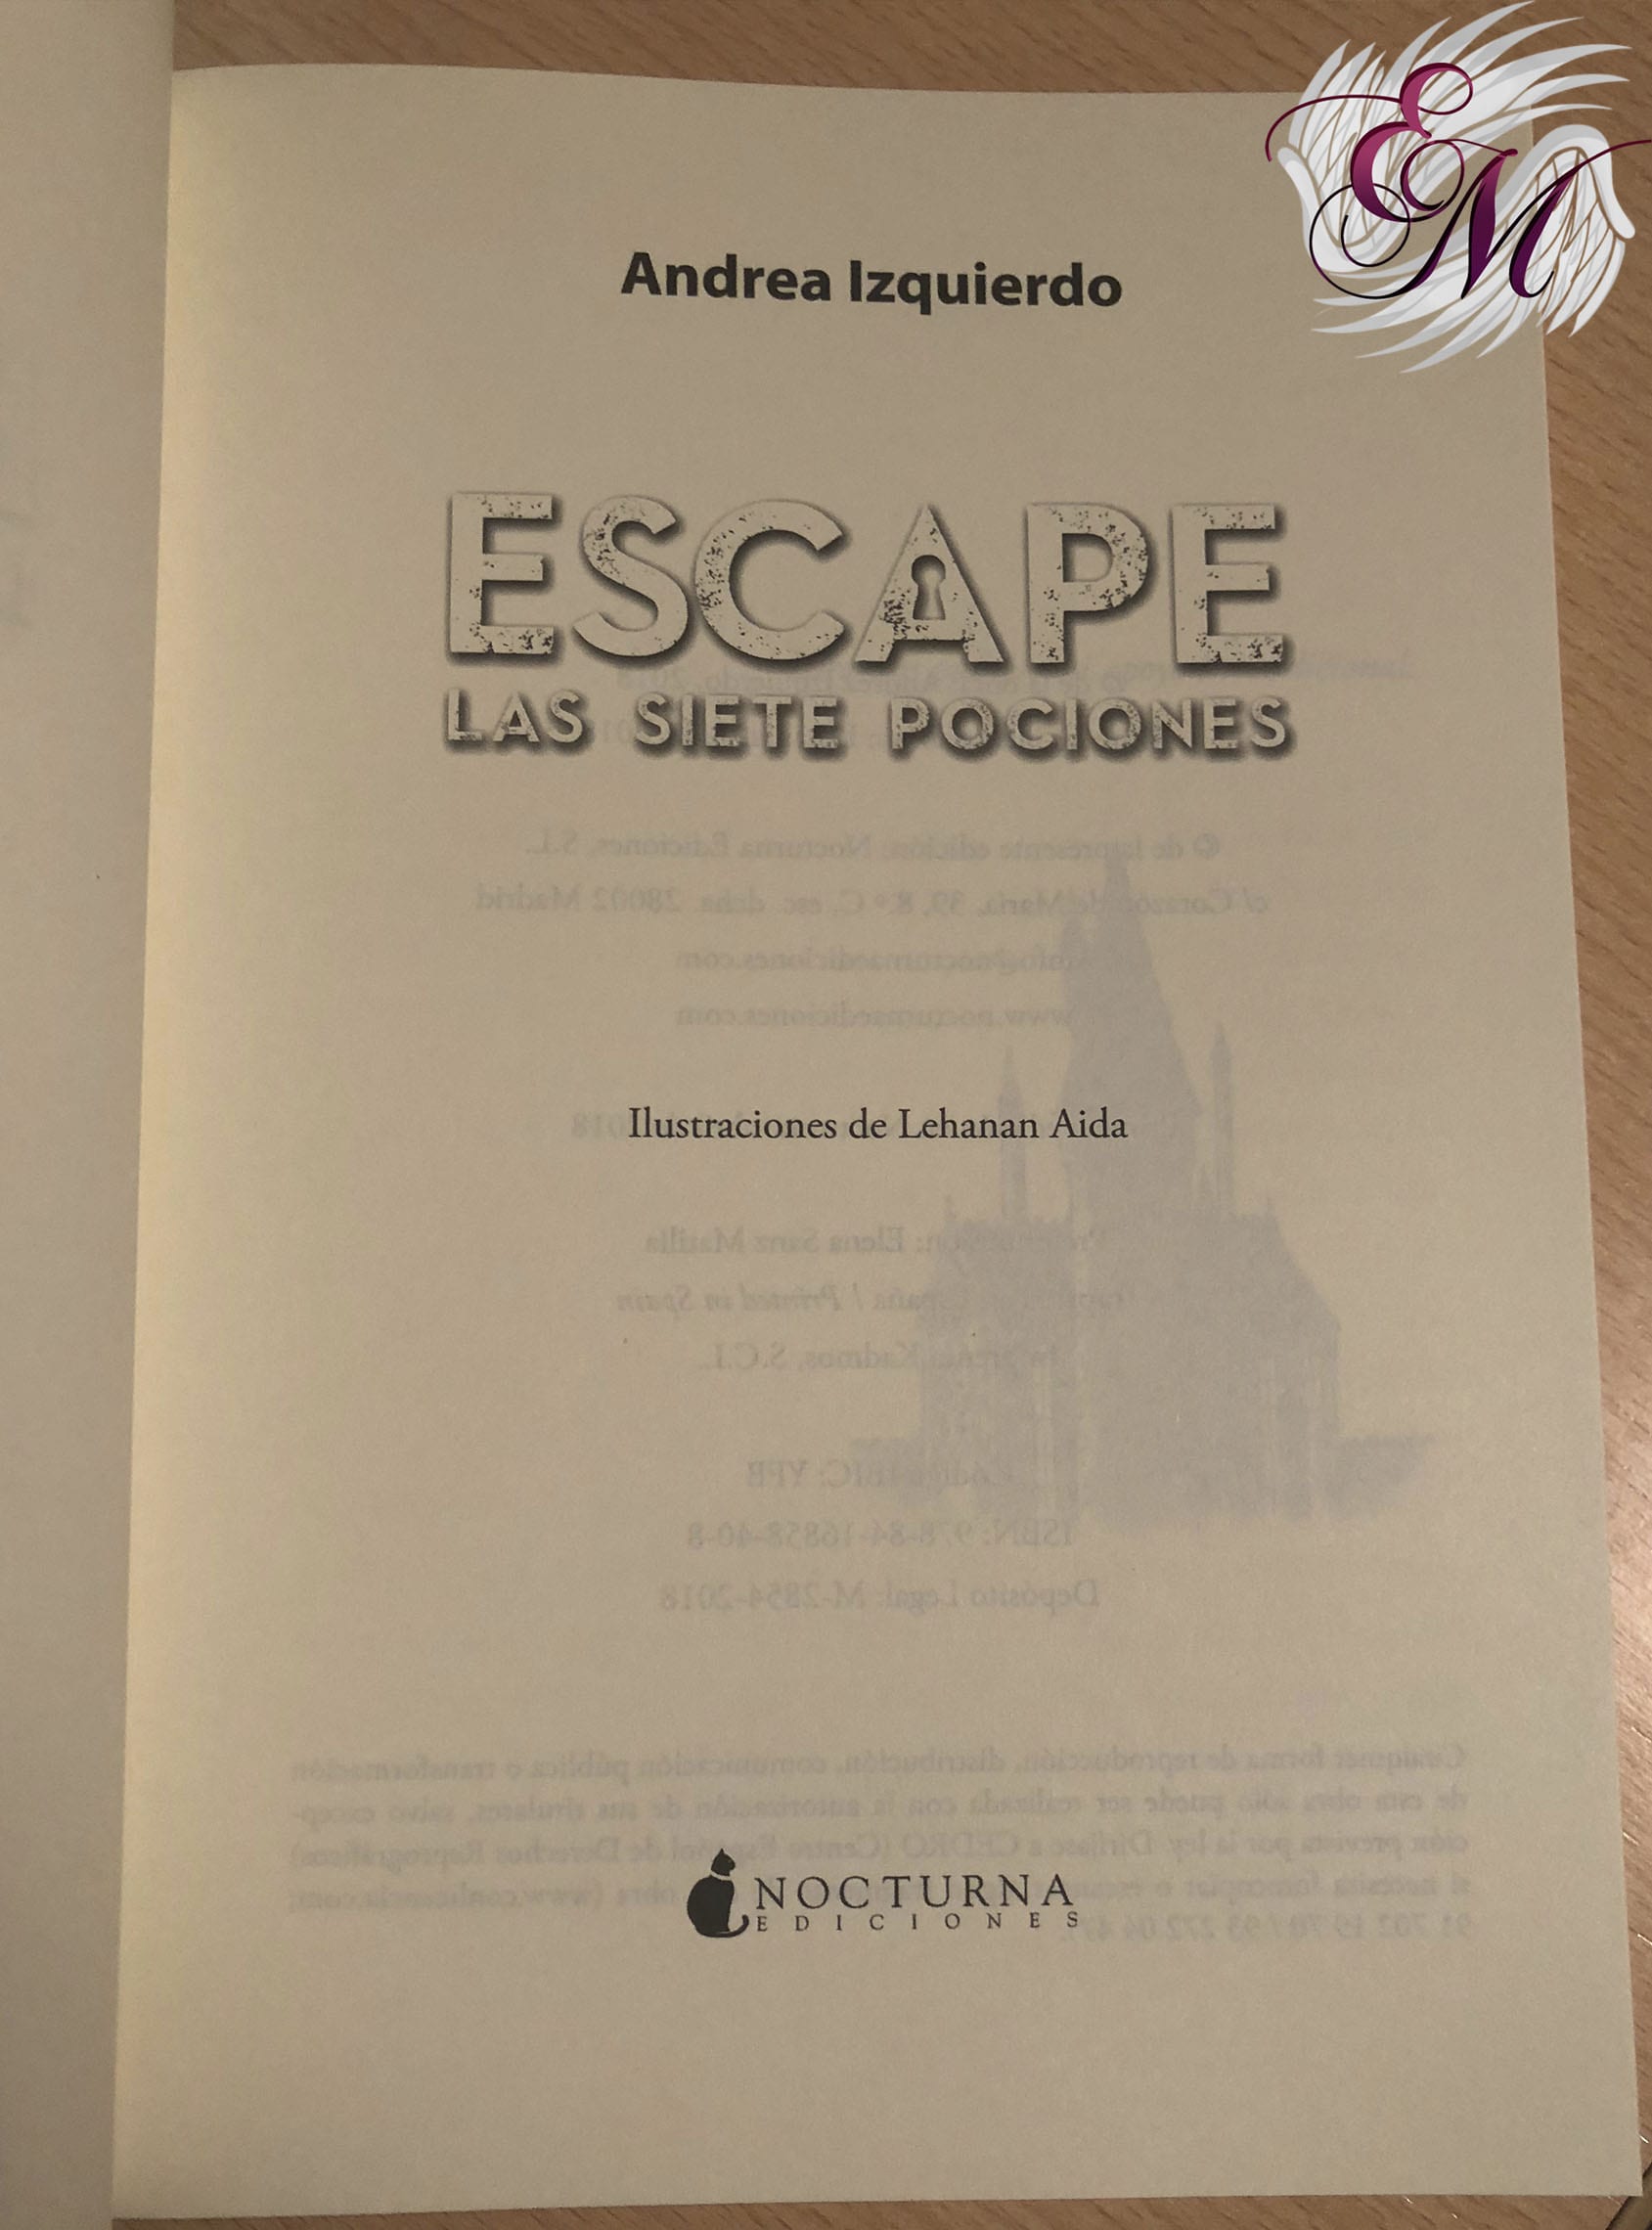 Escape: Las siete pociones, de Andrea Izquierdo - Reseña